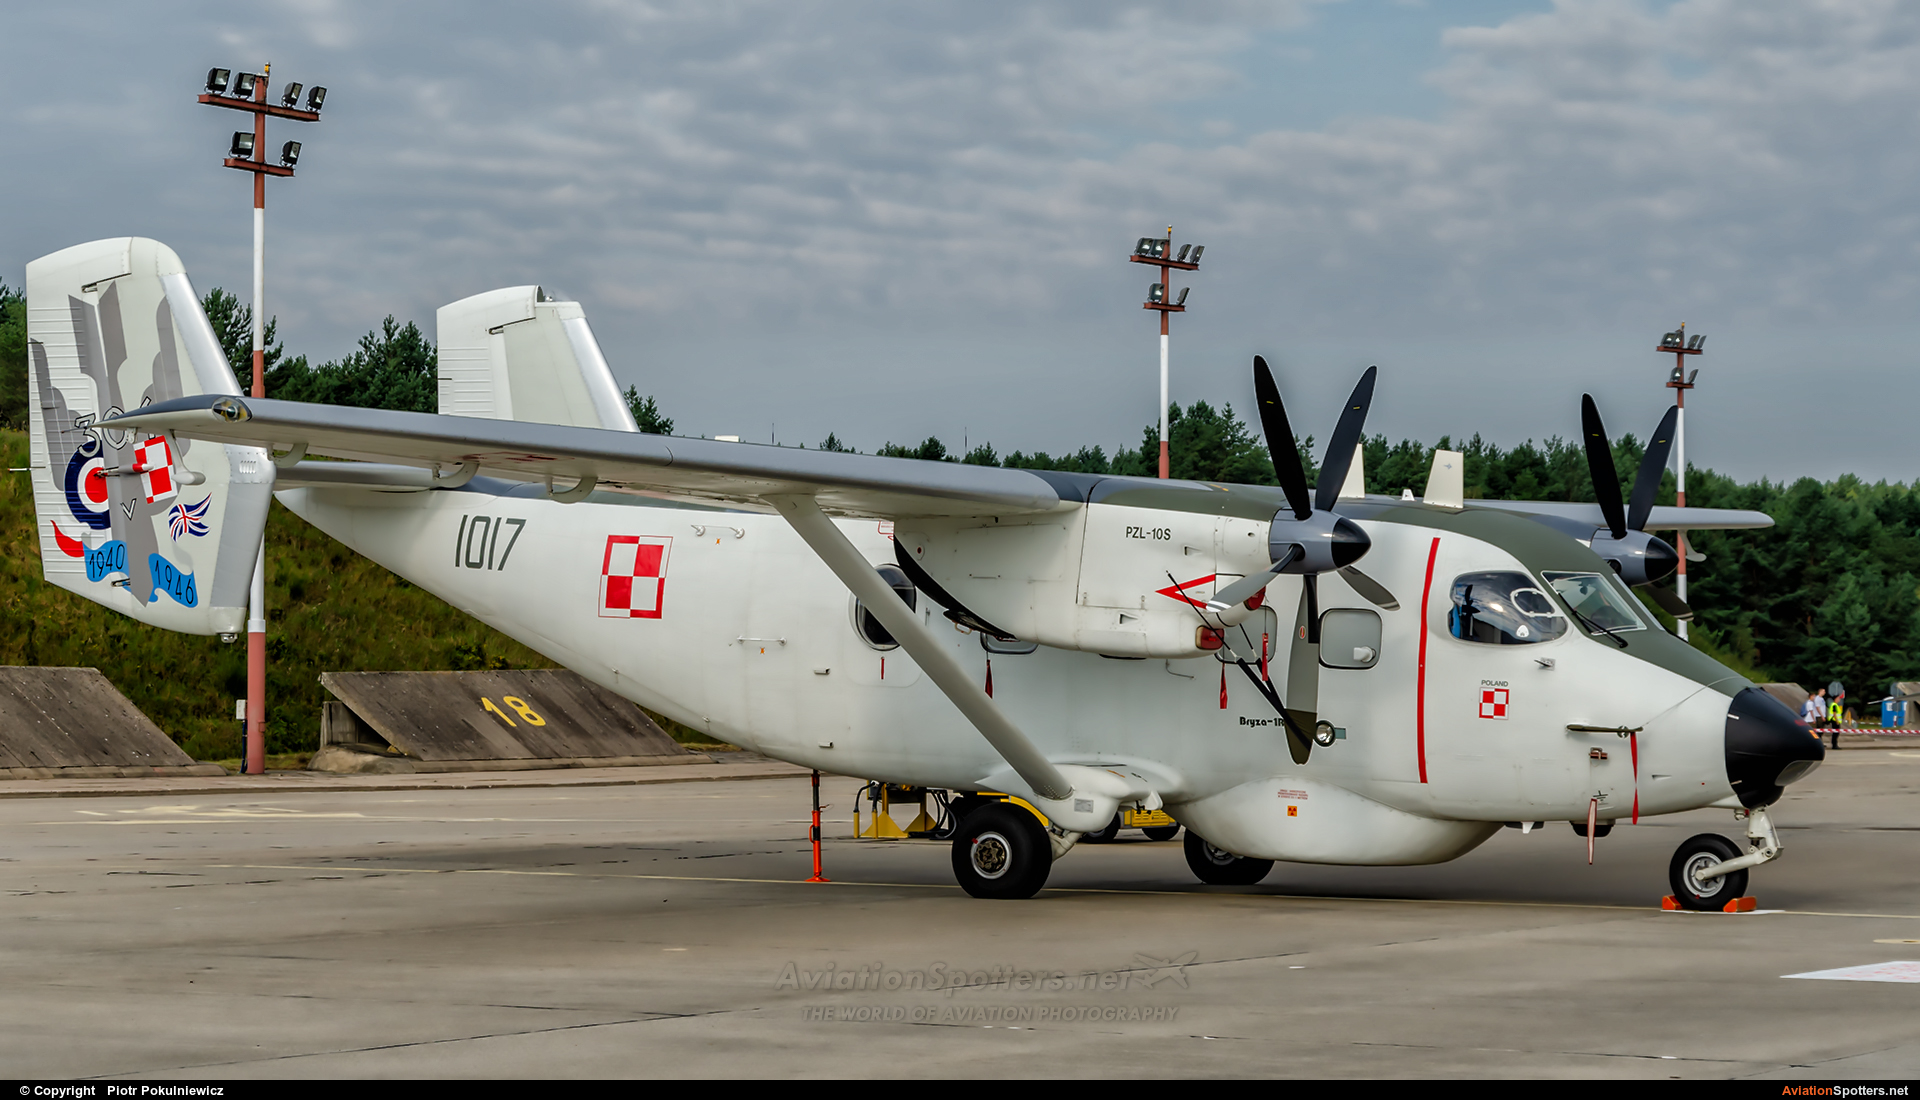 Poland - Air Force  -  M-28 Bryza  (1017) By Piotr Pokulniewicz (Piciu)